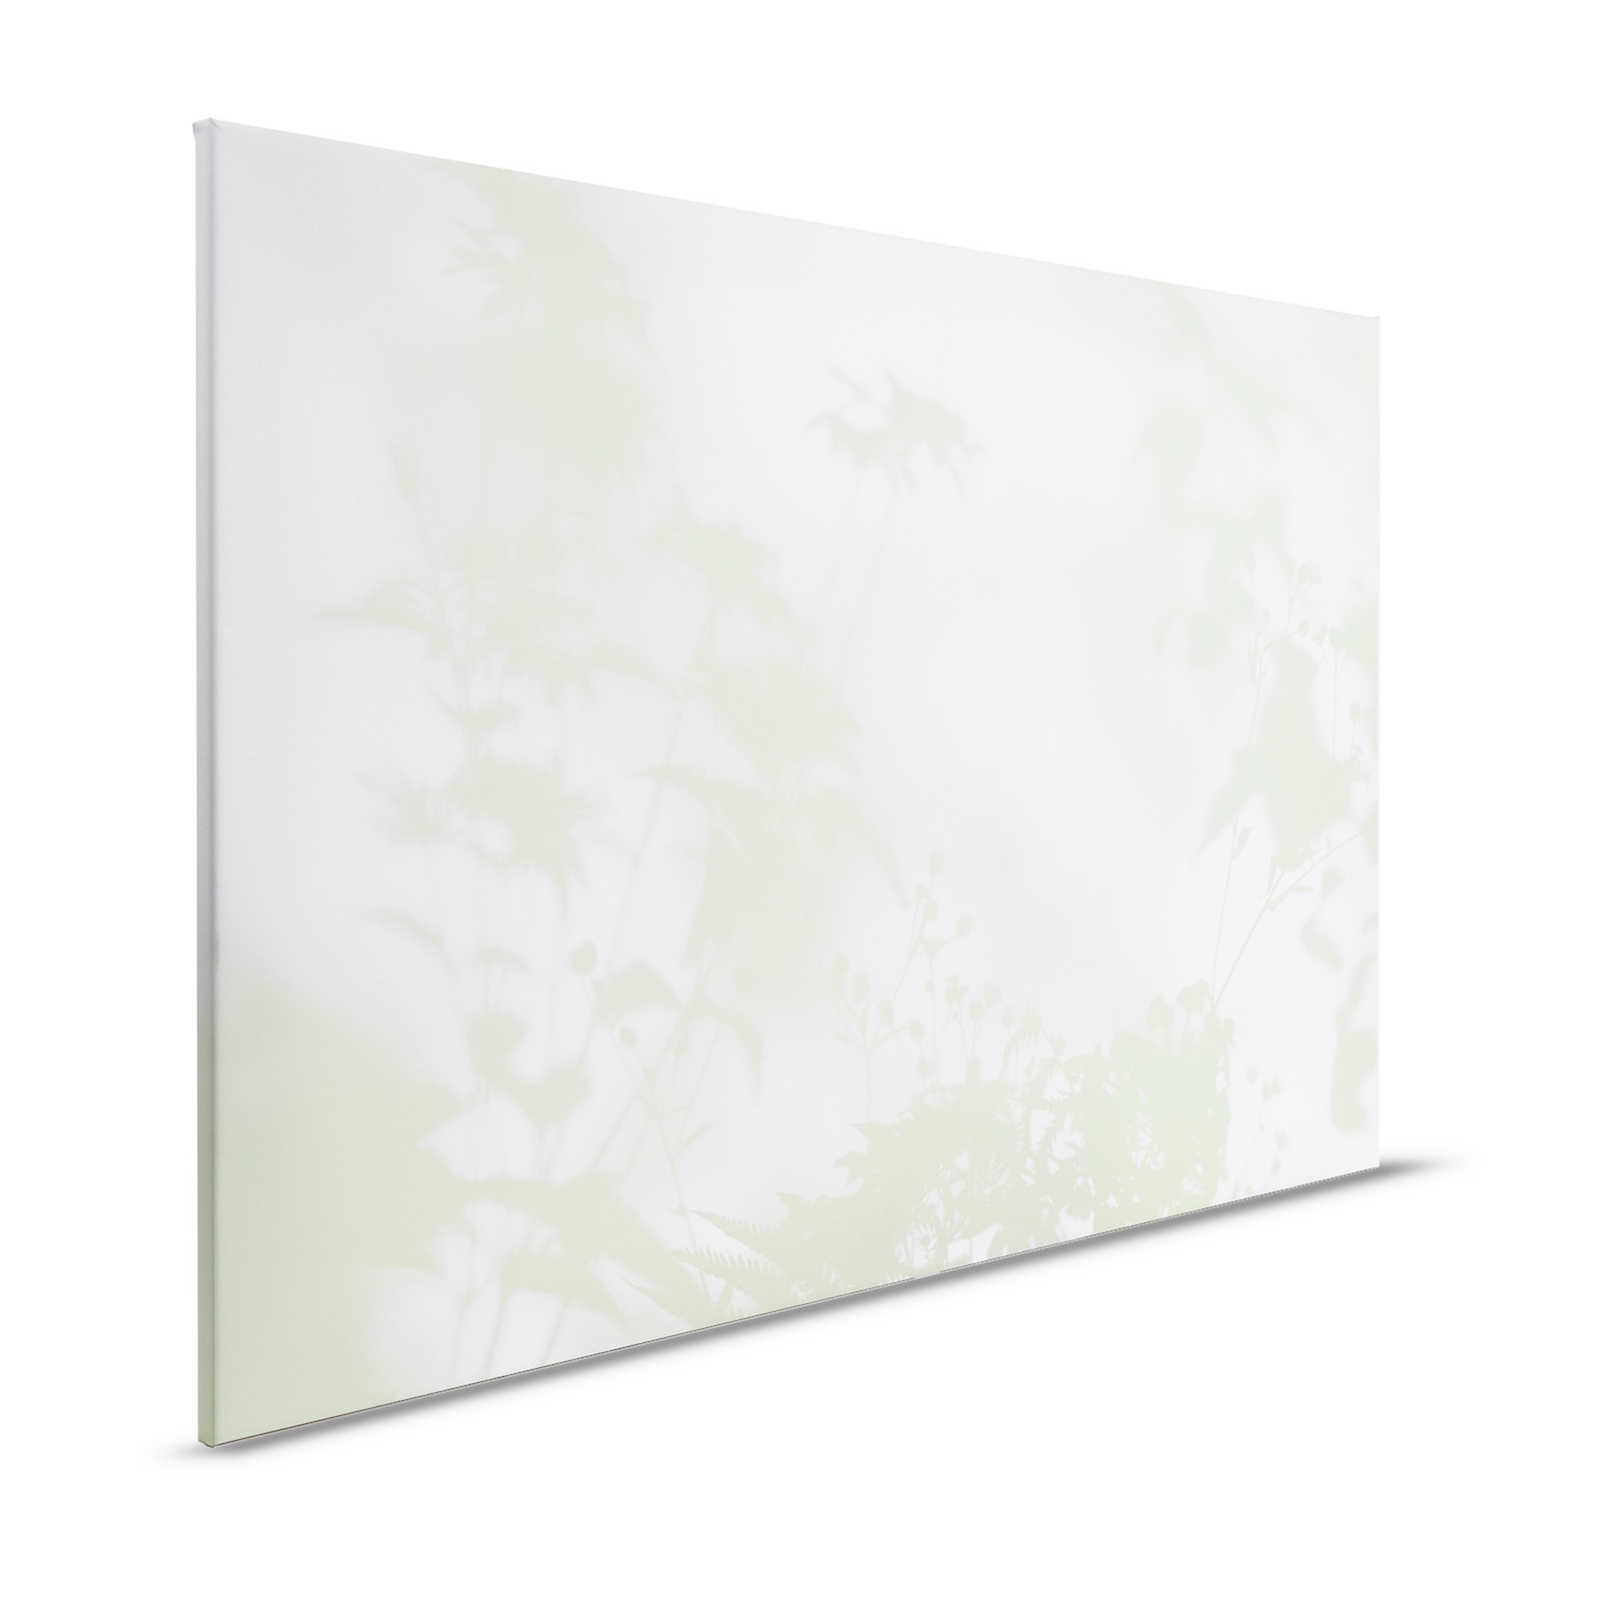 Shadow Room 3 - Lienzo Naturaleza Verde y Blanco, Diseño Desvanecido - 1.20 m x 0.80 m
